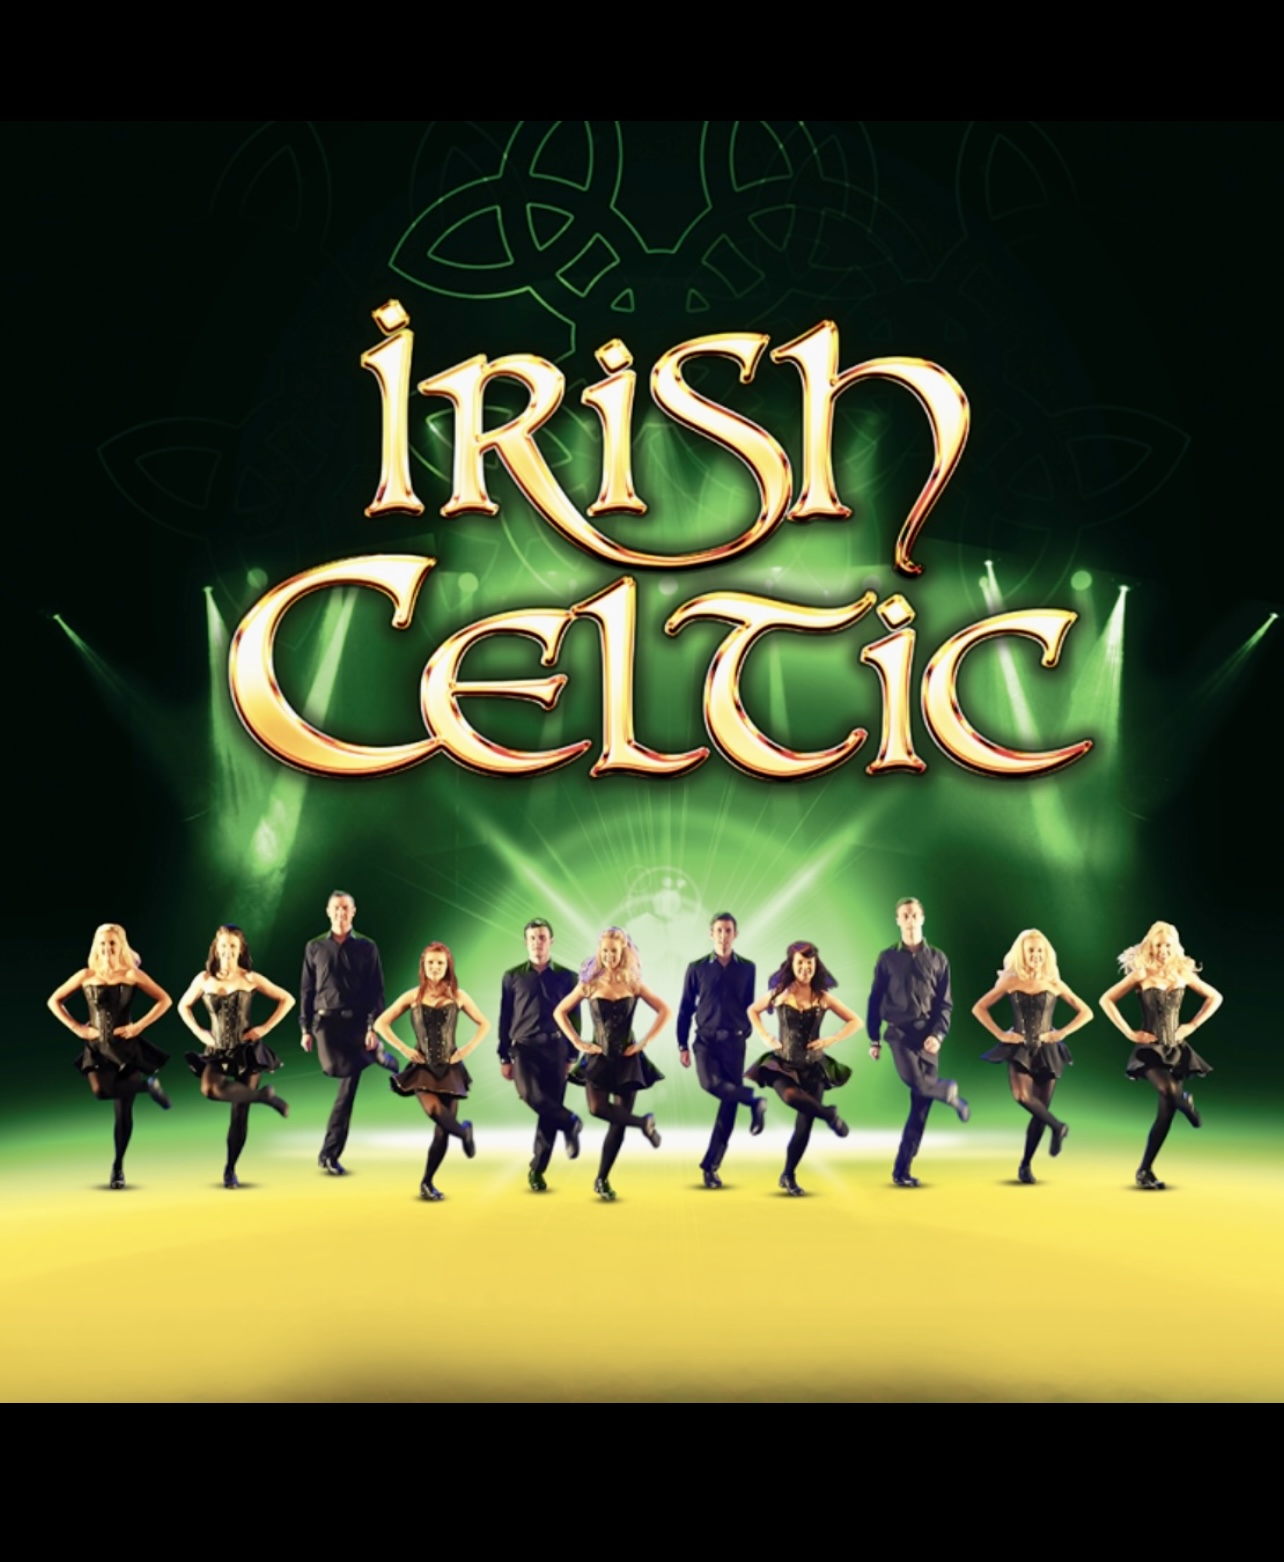 Irish Celtic, spectacle danse et musique d'Irlande à l'Espace St-Denis